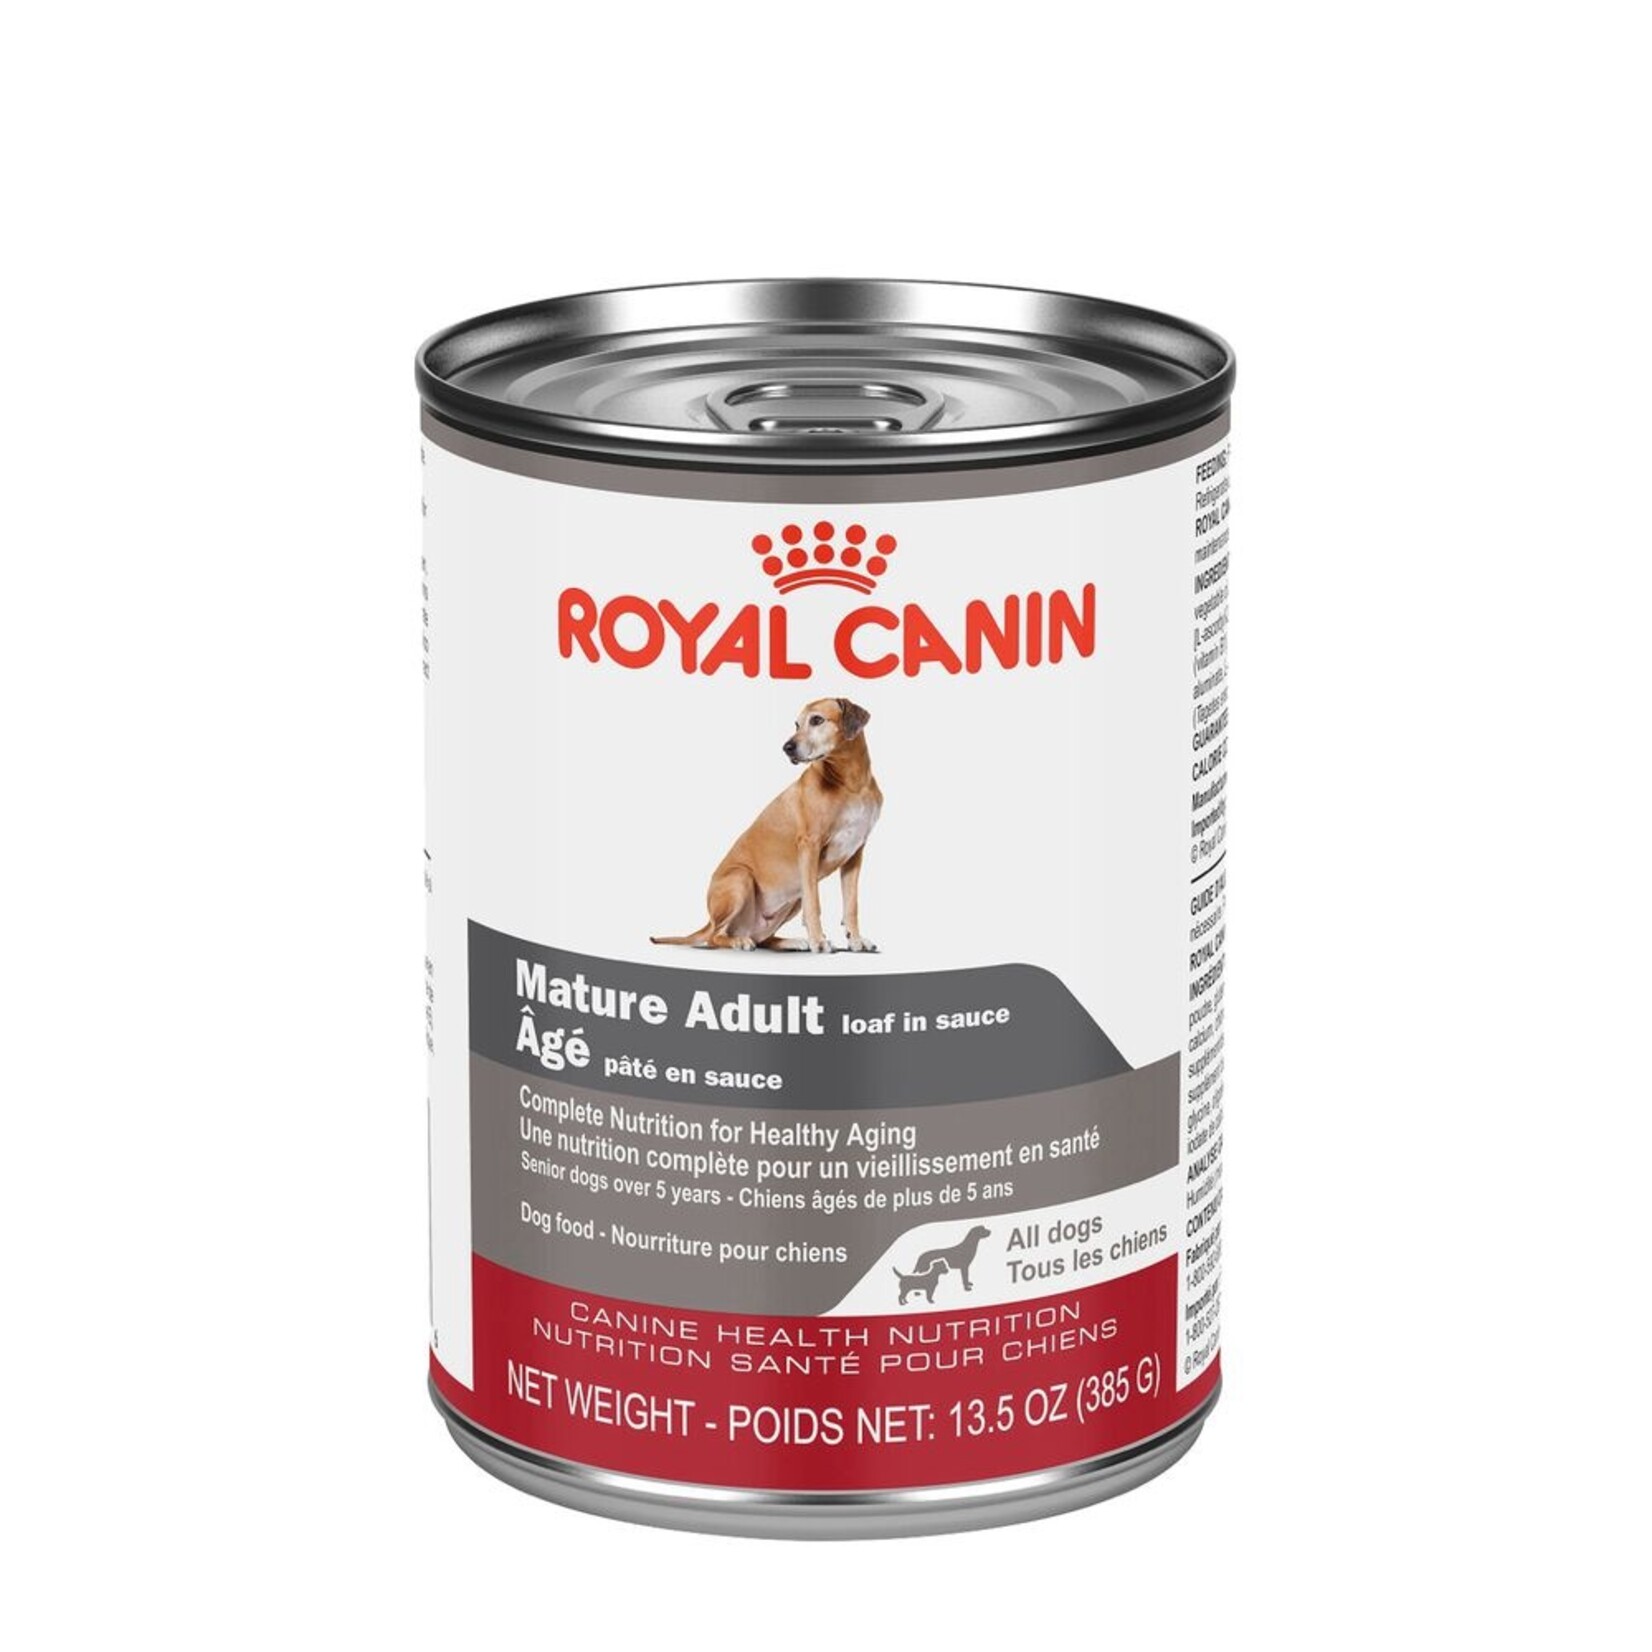 ROYAL CANIN ROYAL CANIN CHIEN MATURE NOURRITURE HUMIDE EN PATÉ 385 G